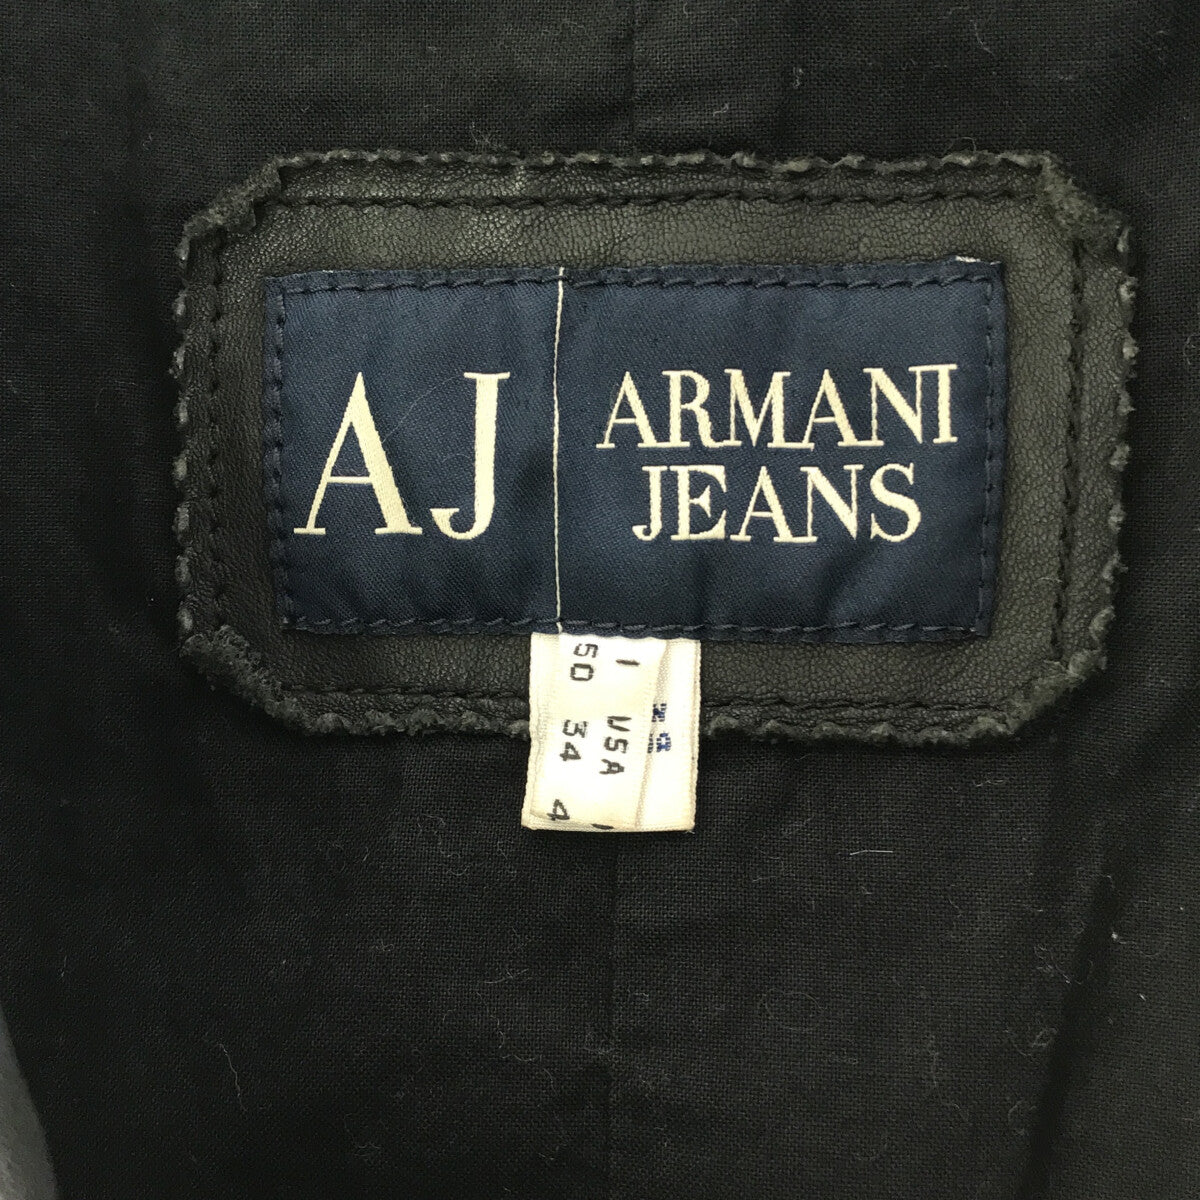 ARMANI JEANS / アルマーニジーンズ | レザー カバーオール ジャケット | 50 |